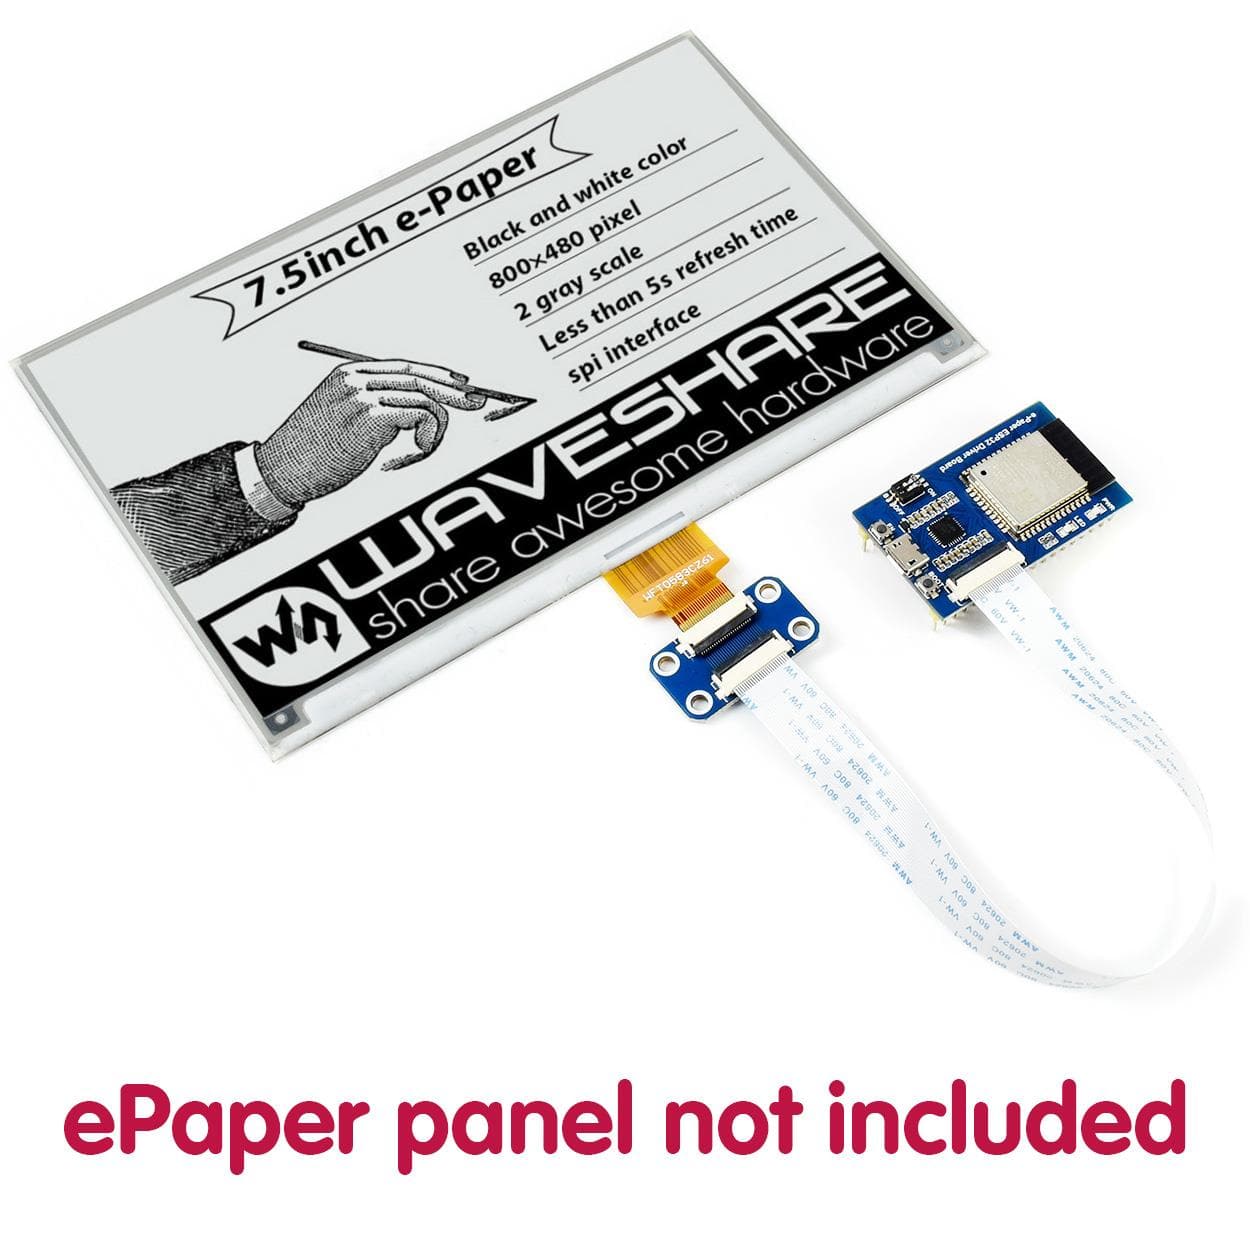 ESP32 Universal e-Paper Driver Board - The Pi Hut